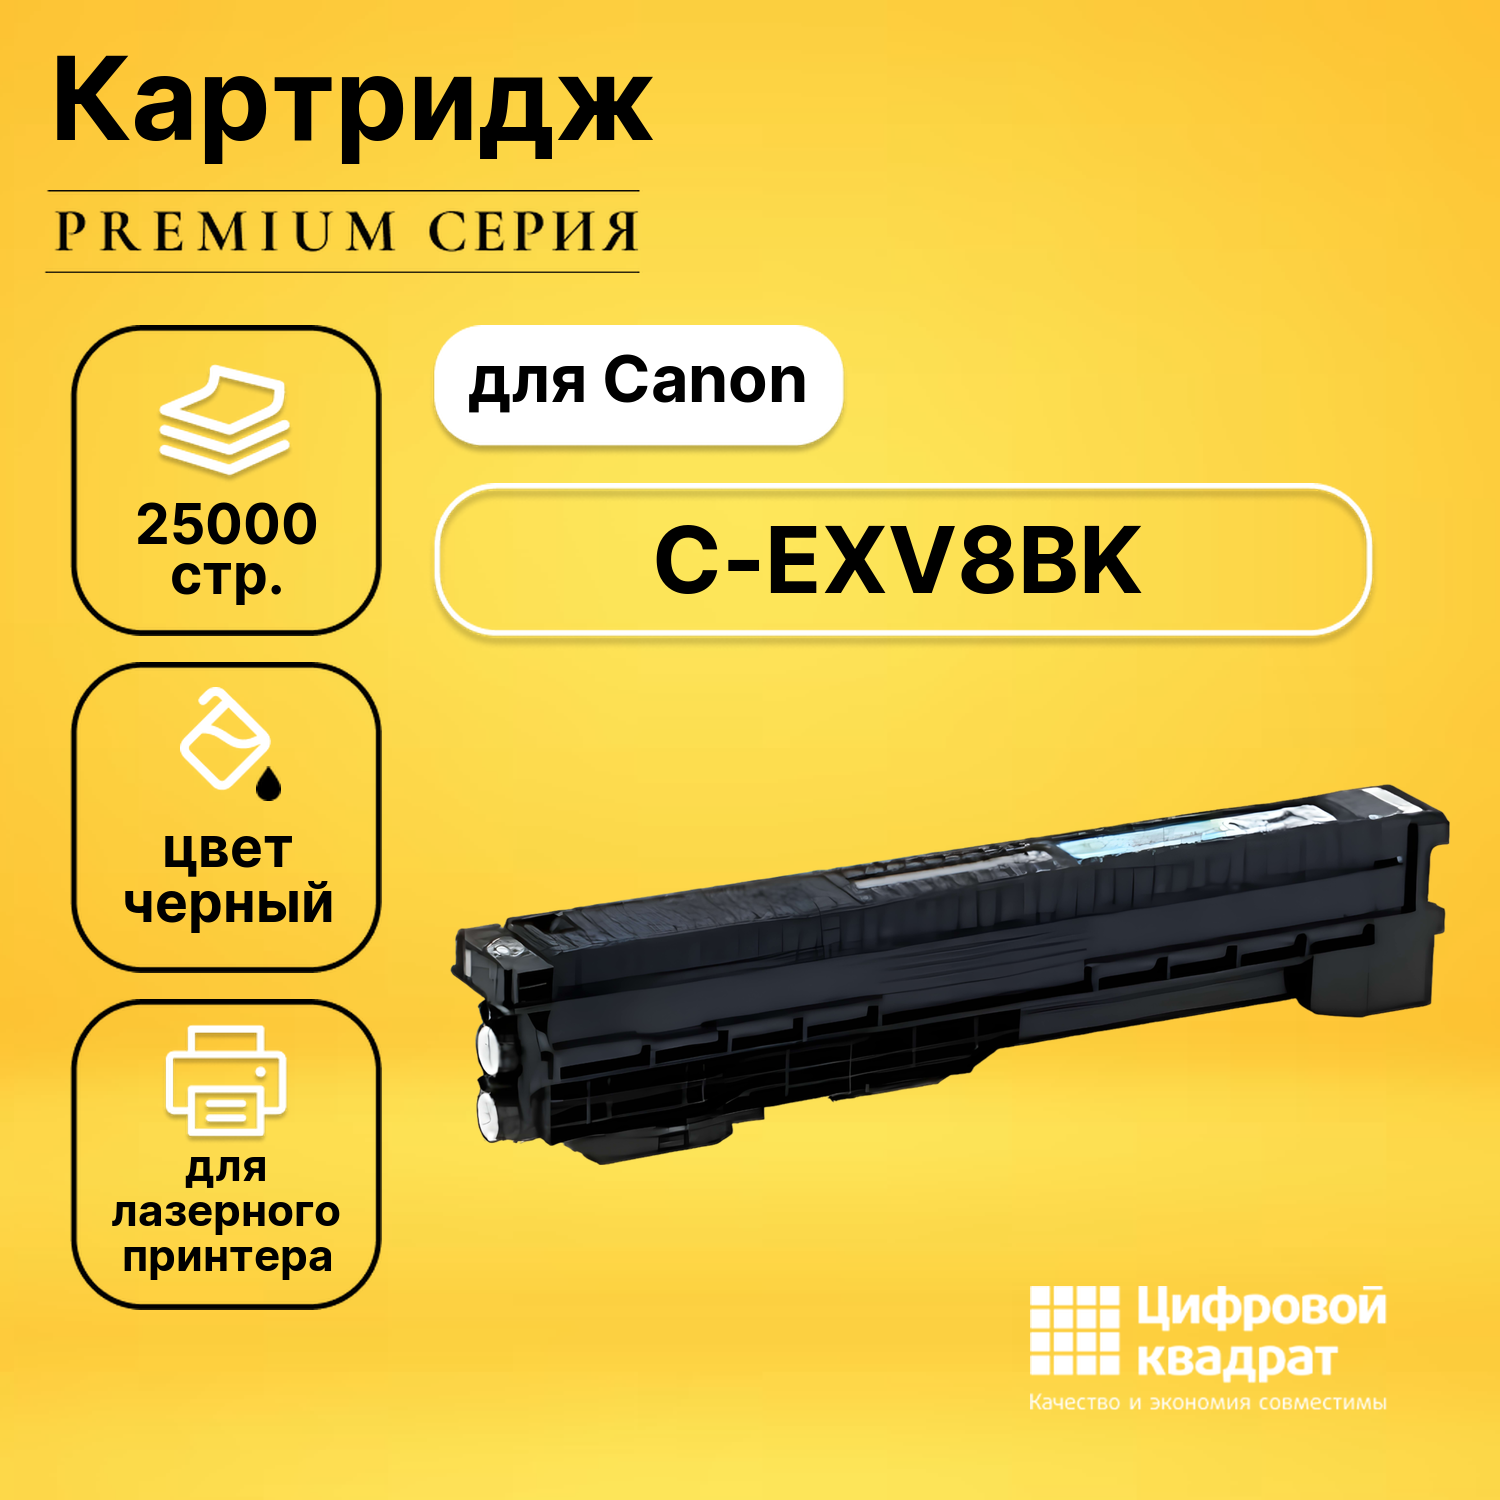 Картридж DS C-EXV8BK Canon черный совместимый